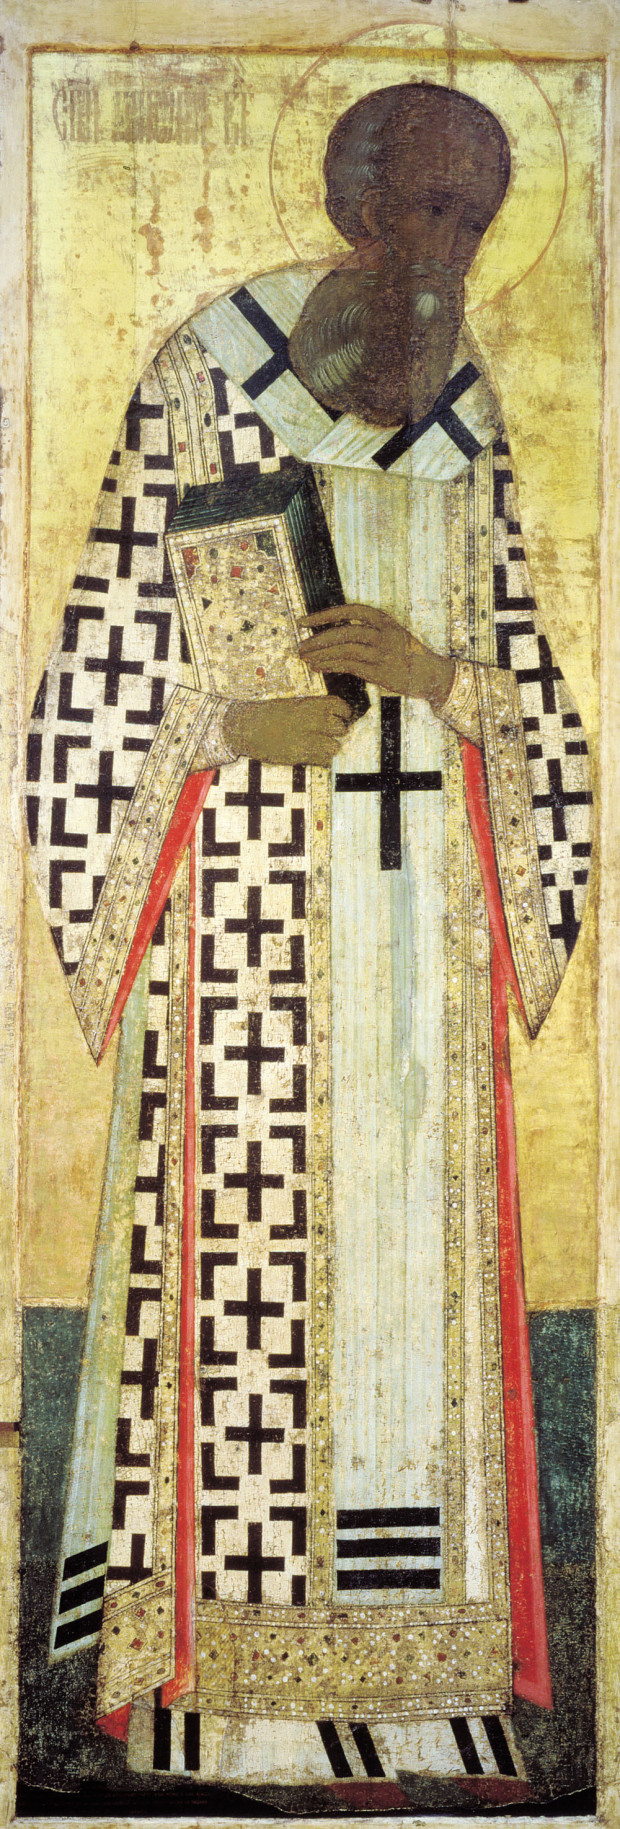 Άγιος Γρηγόριος ο Θεολόγος - Αντρέι Ρουμπλιόβ, 1408 μ.Χ.